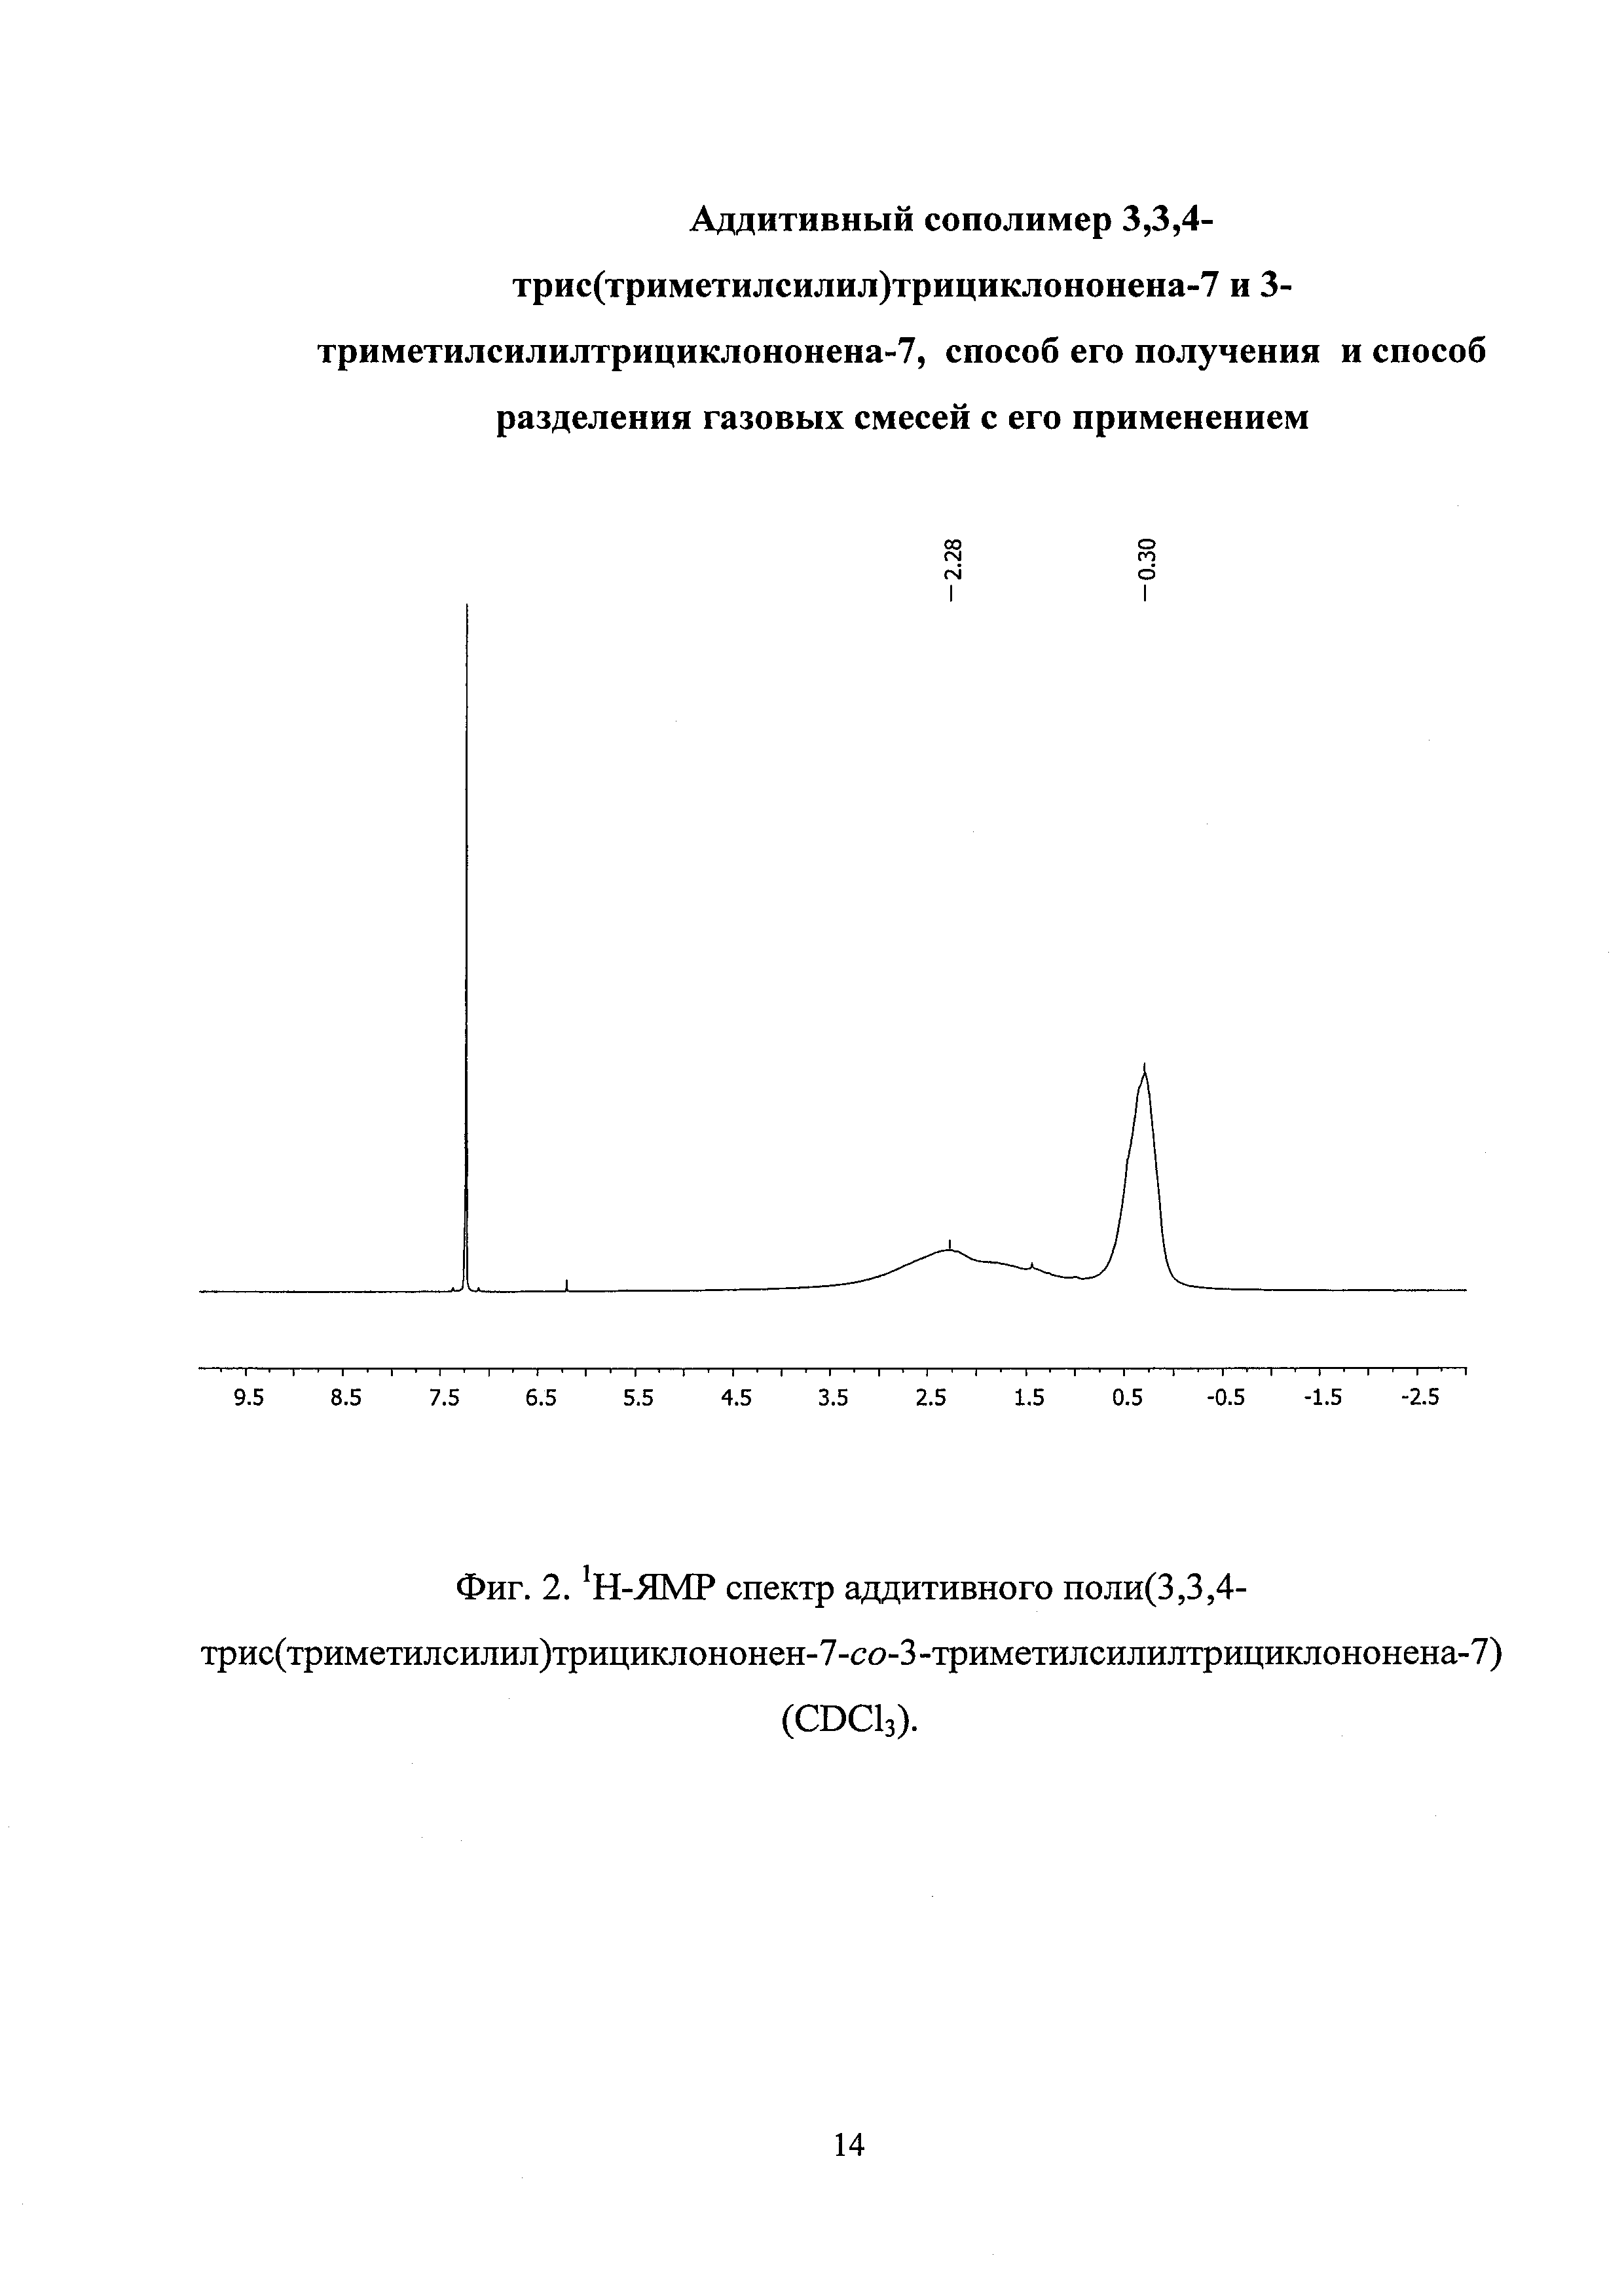 Аддитивный сополимер 3,3,4-трис(триметилсилил)трициклононена-7 и 3-триметилсилилтрициклононена-7, способ его получения и способ разделения газовых смесей с его применением